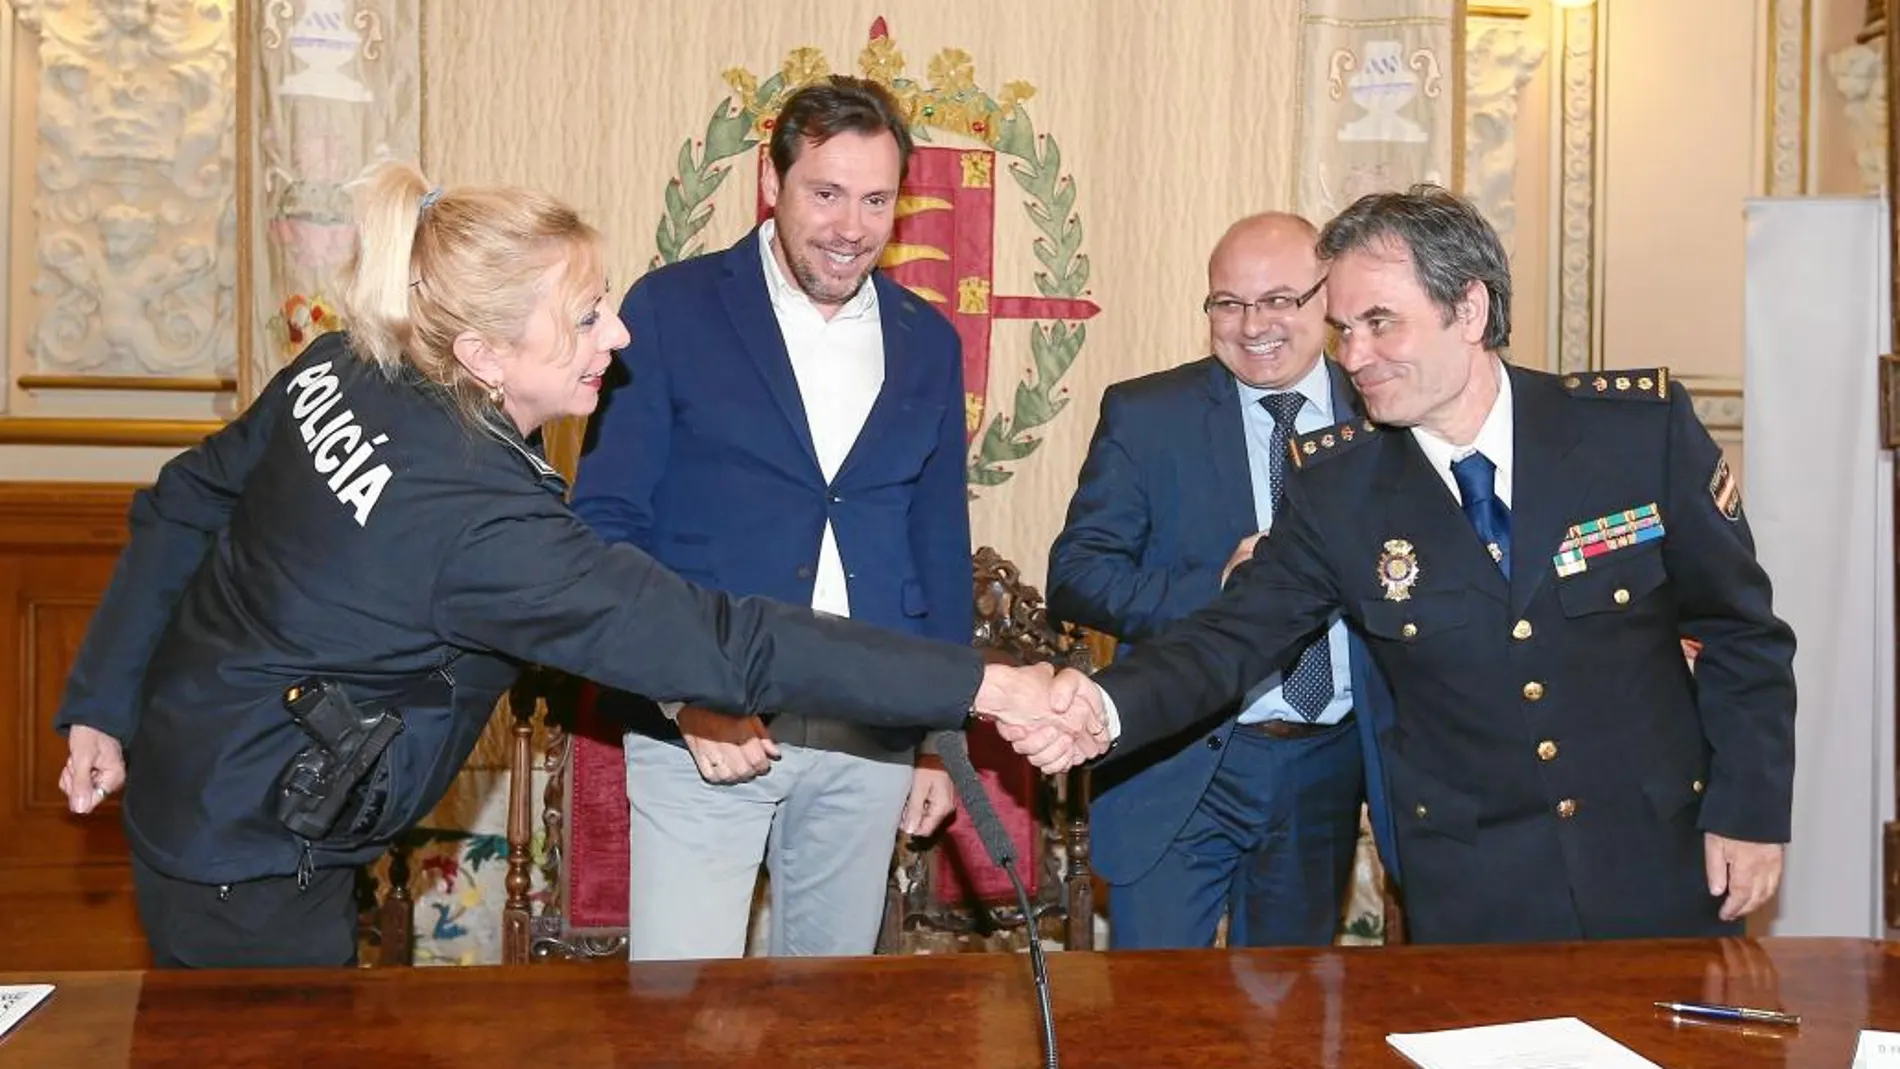 El comisario López Canedo estrecha la mano de Julia González en presencia de Puente y Luis Antonio Gómez